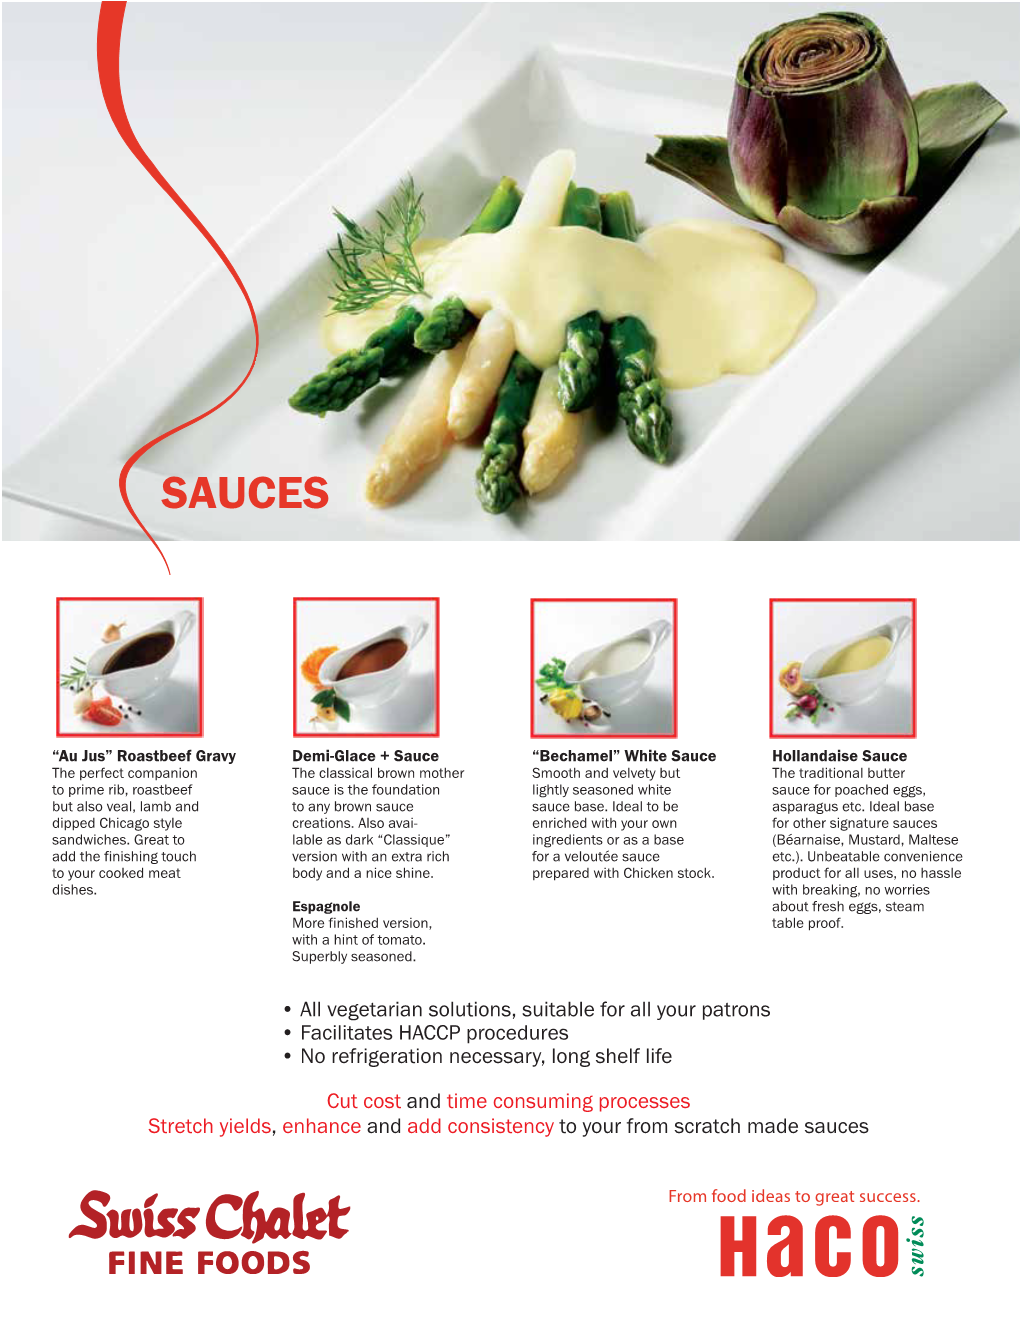 Haco Sauces Flyer 2015